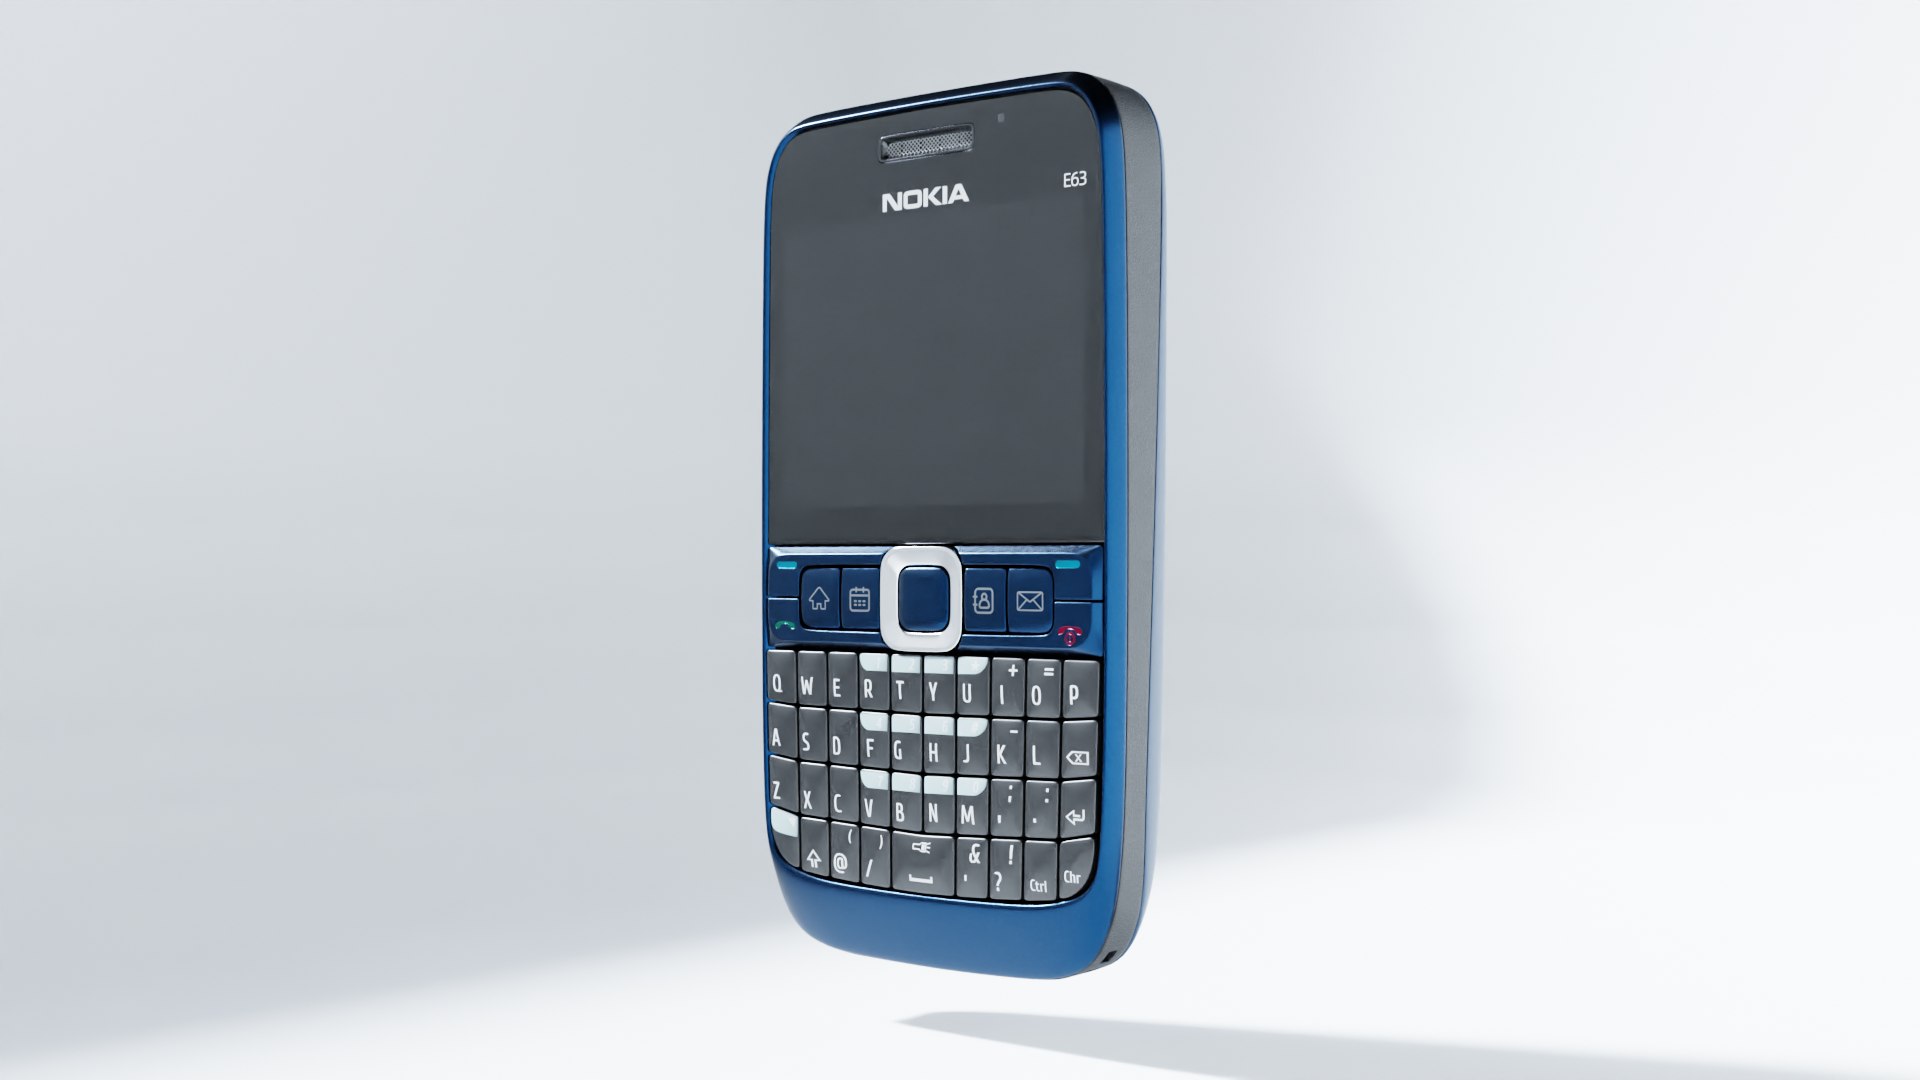 Nokia E63 telephone 3D model https://p.turbosquid.com/ts-thumb/W7/w2Bb01/t5/1/png/1630942023/1920x1080/fit_q87/7b4187284fe0b9e1184654953b0623352f35a99b/1.jpg